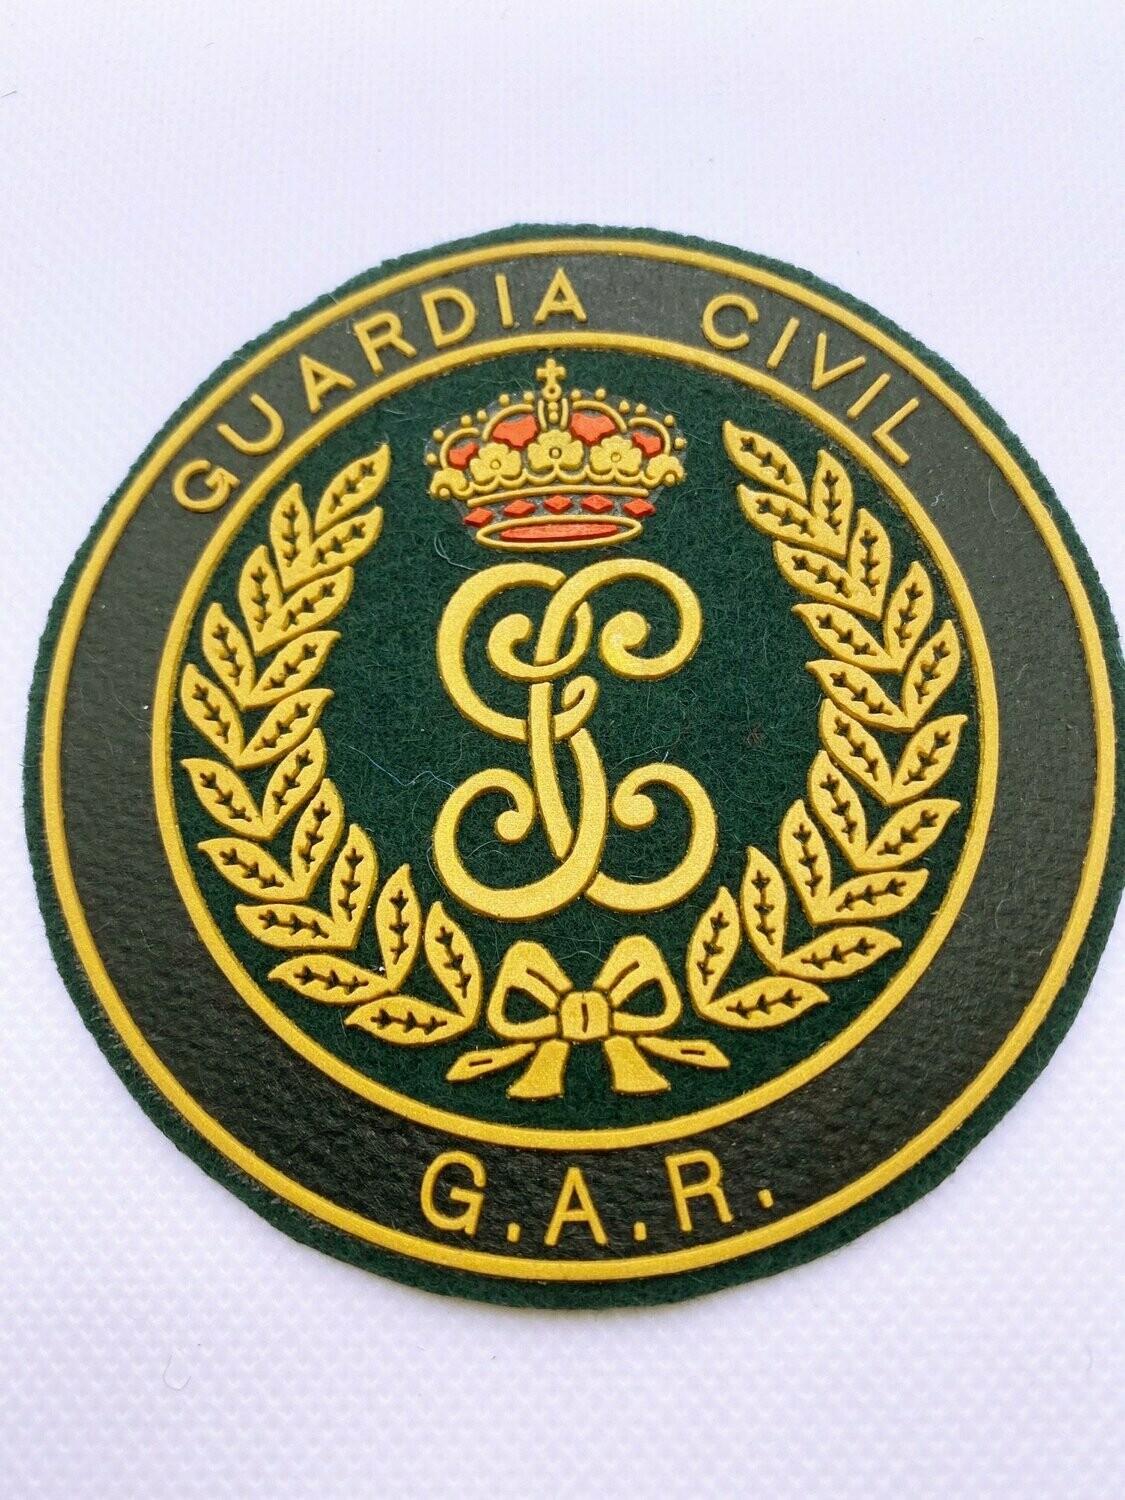 PARCHE GUARDIA CIVIL G.A.R.